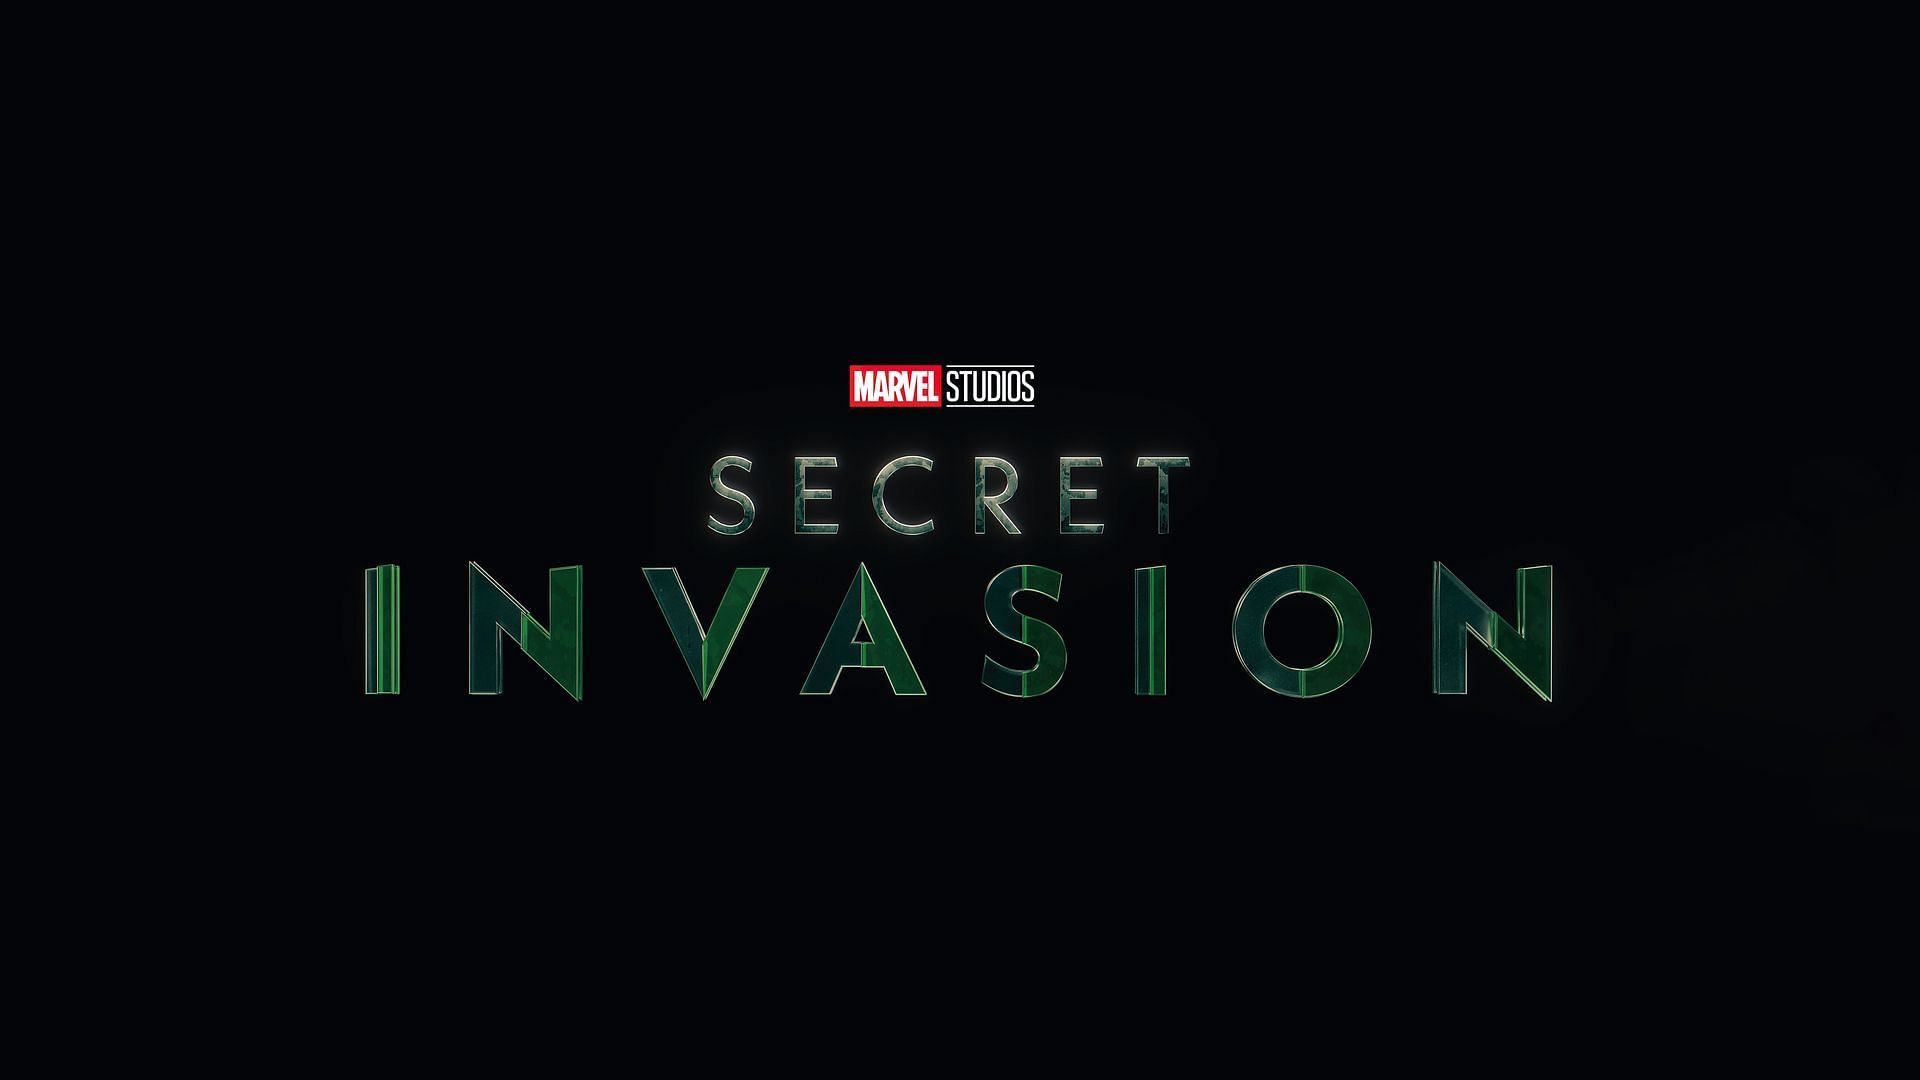 Secret invasion poster in spider man 1｜TikTok Search